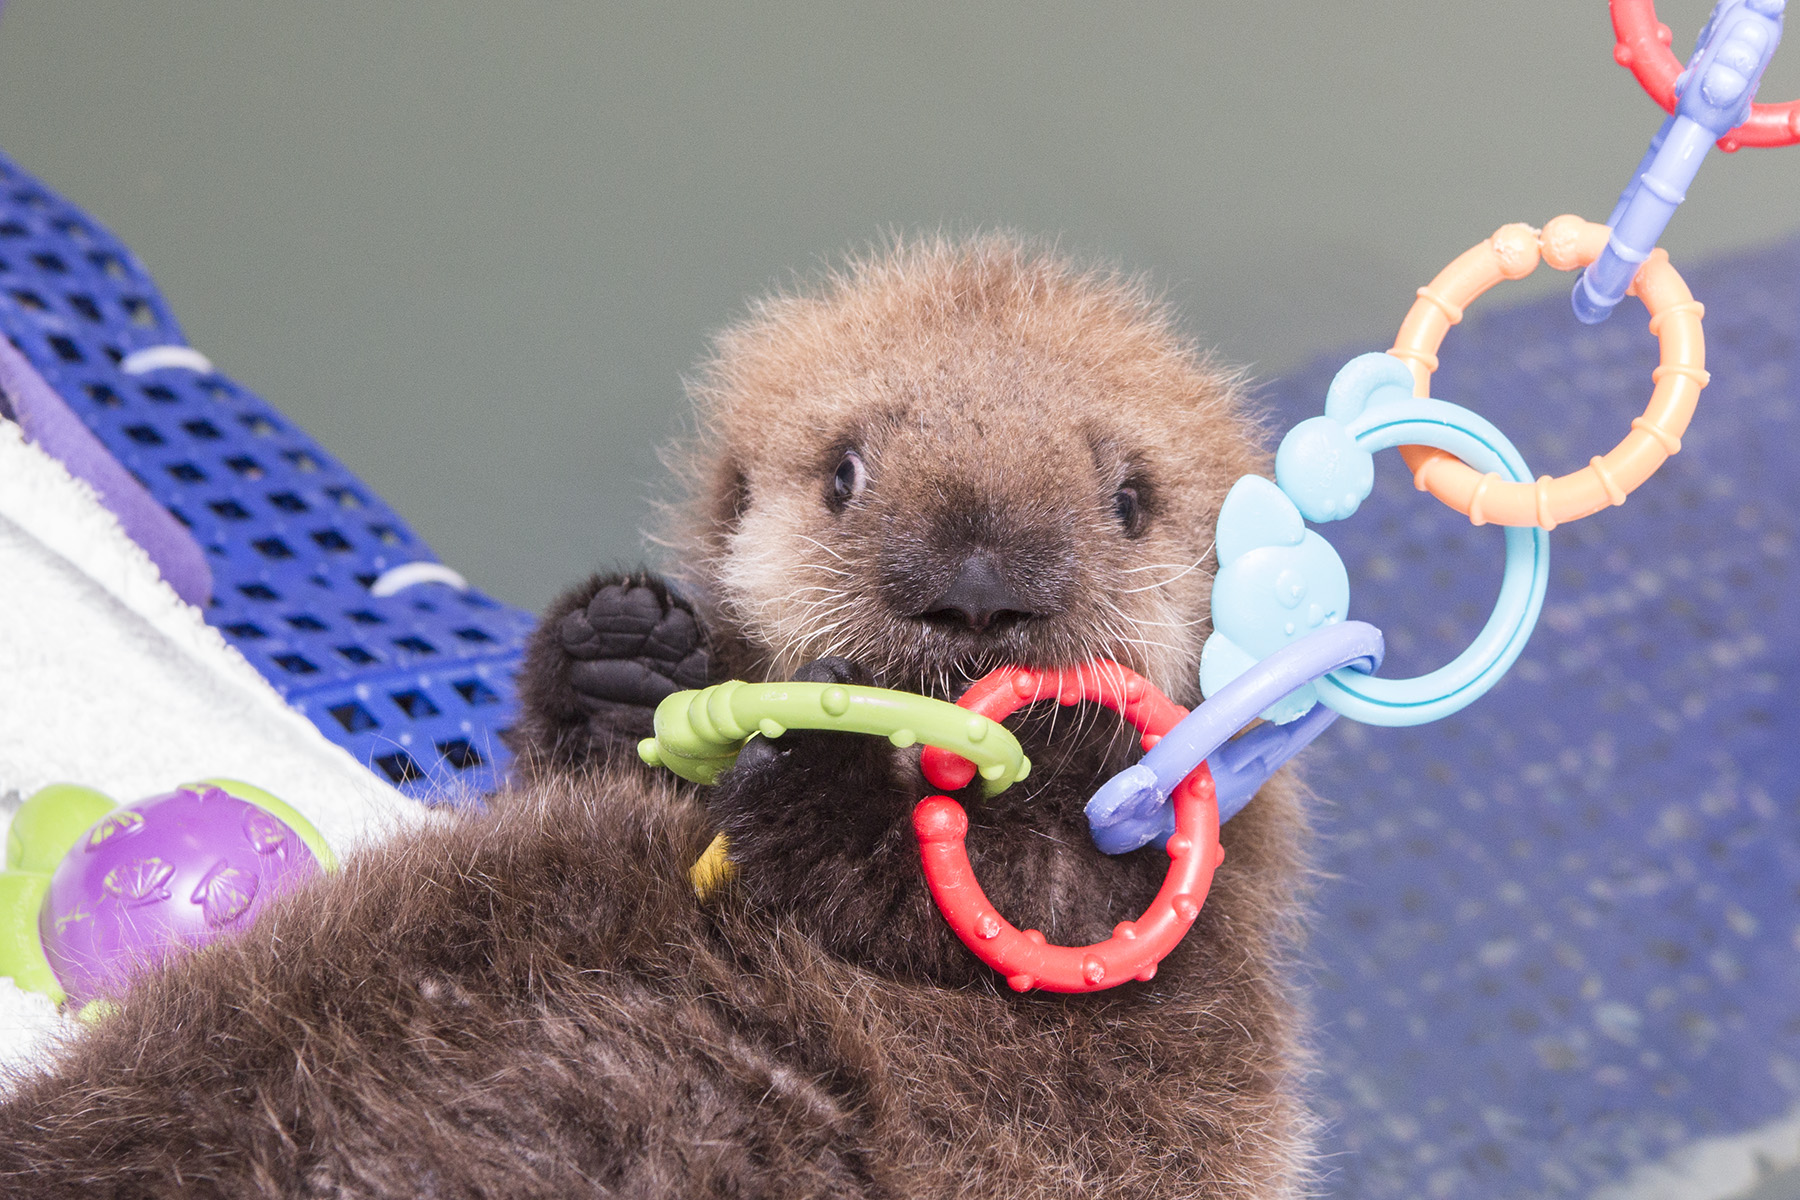 Baby Sea Otter Makes a splash at the Shedd Aquarium! - 5c9a9808